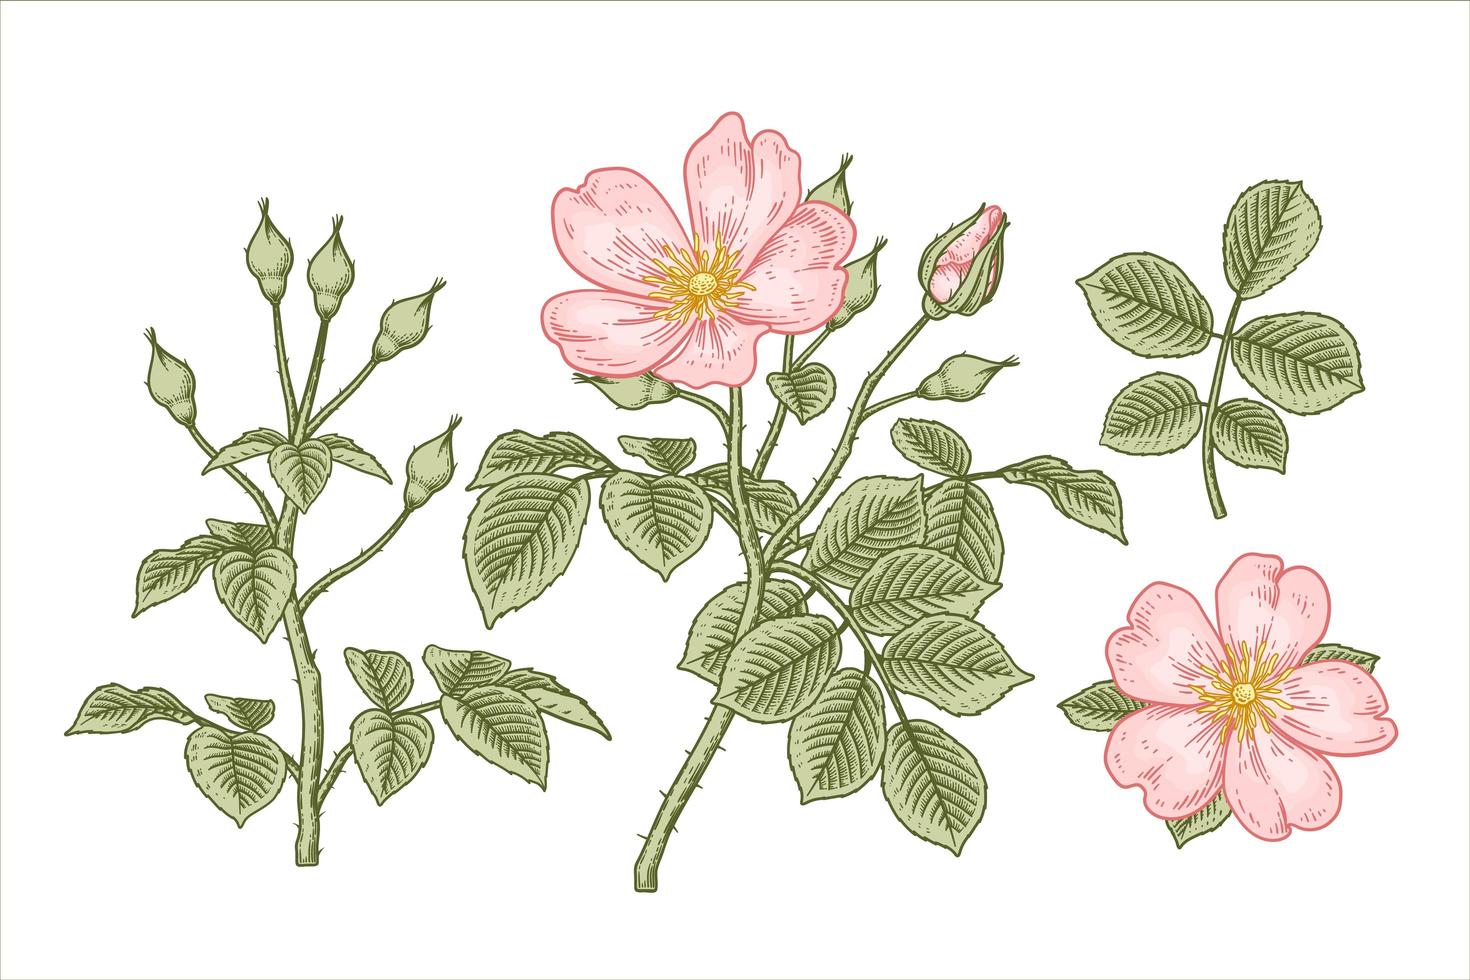 gren av rosa hundros eller rosa canina med blomma och blad handritade element botaniska illustrationer vektor